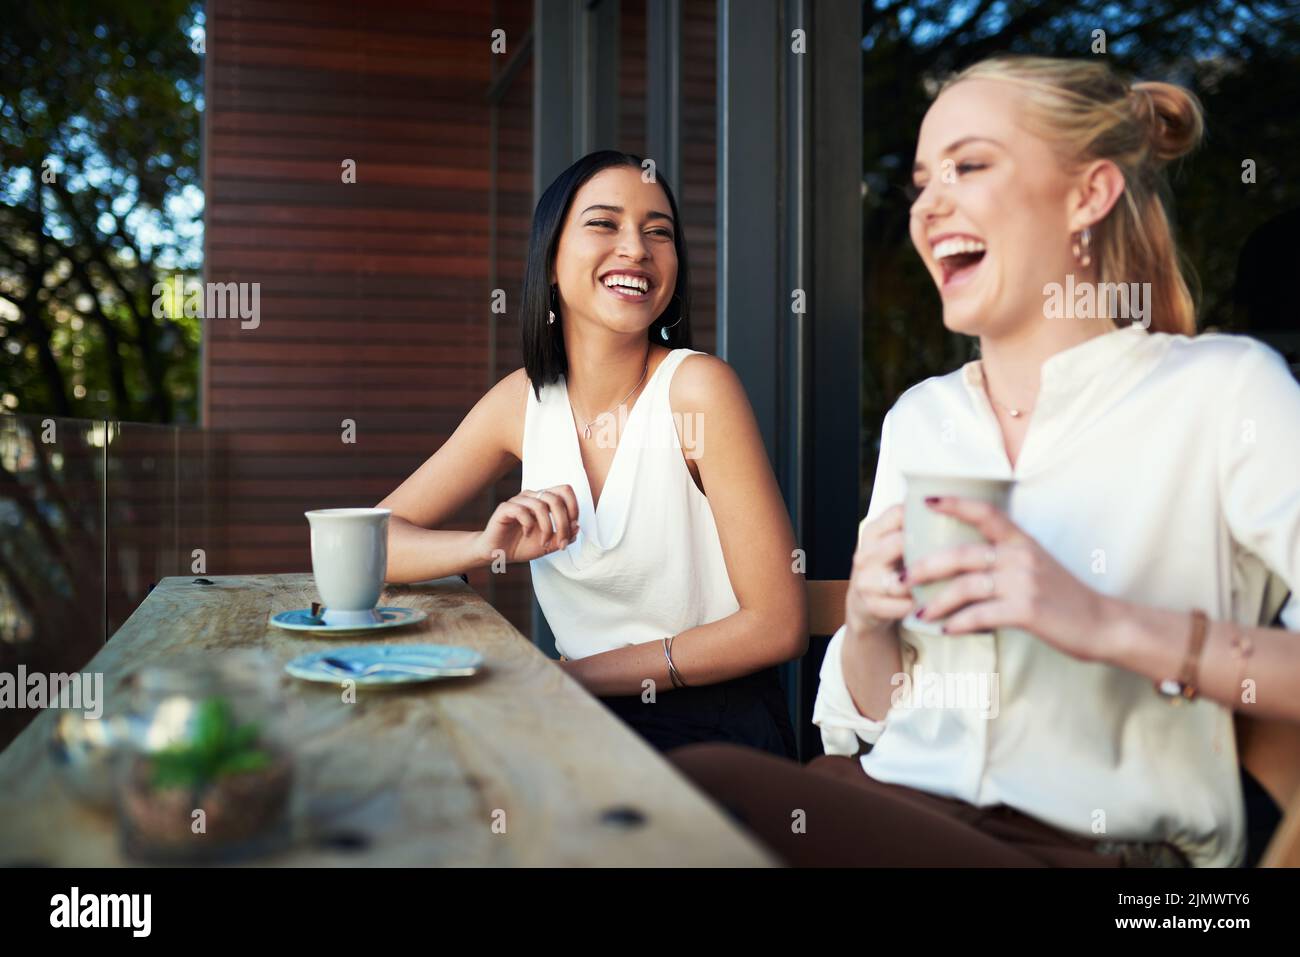 Avevamo bisogno di questa data del caffè: Due giovani donne che si divertano a vicenda mentre si gustavano un caffè in un bar. Foto Stock